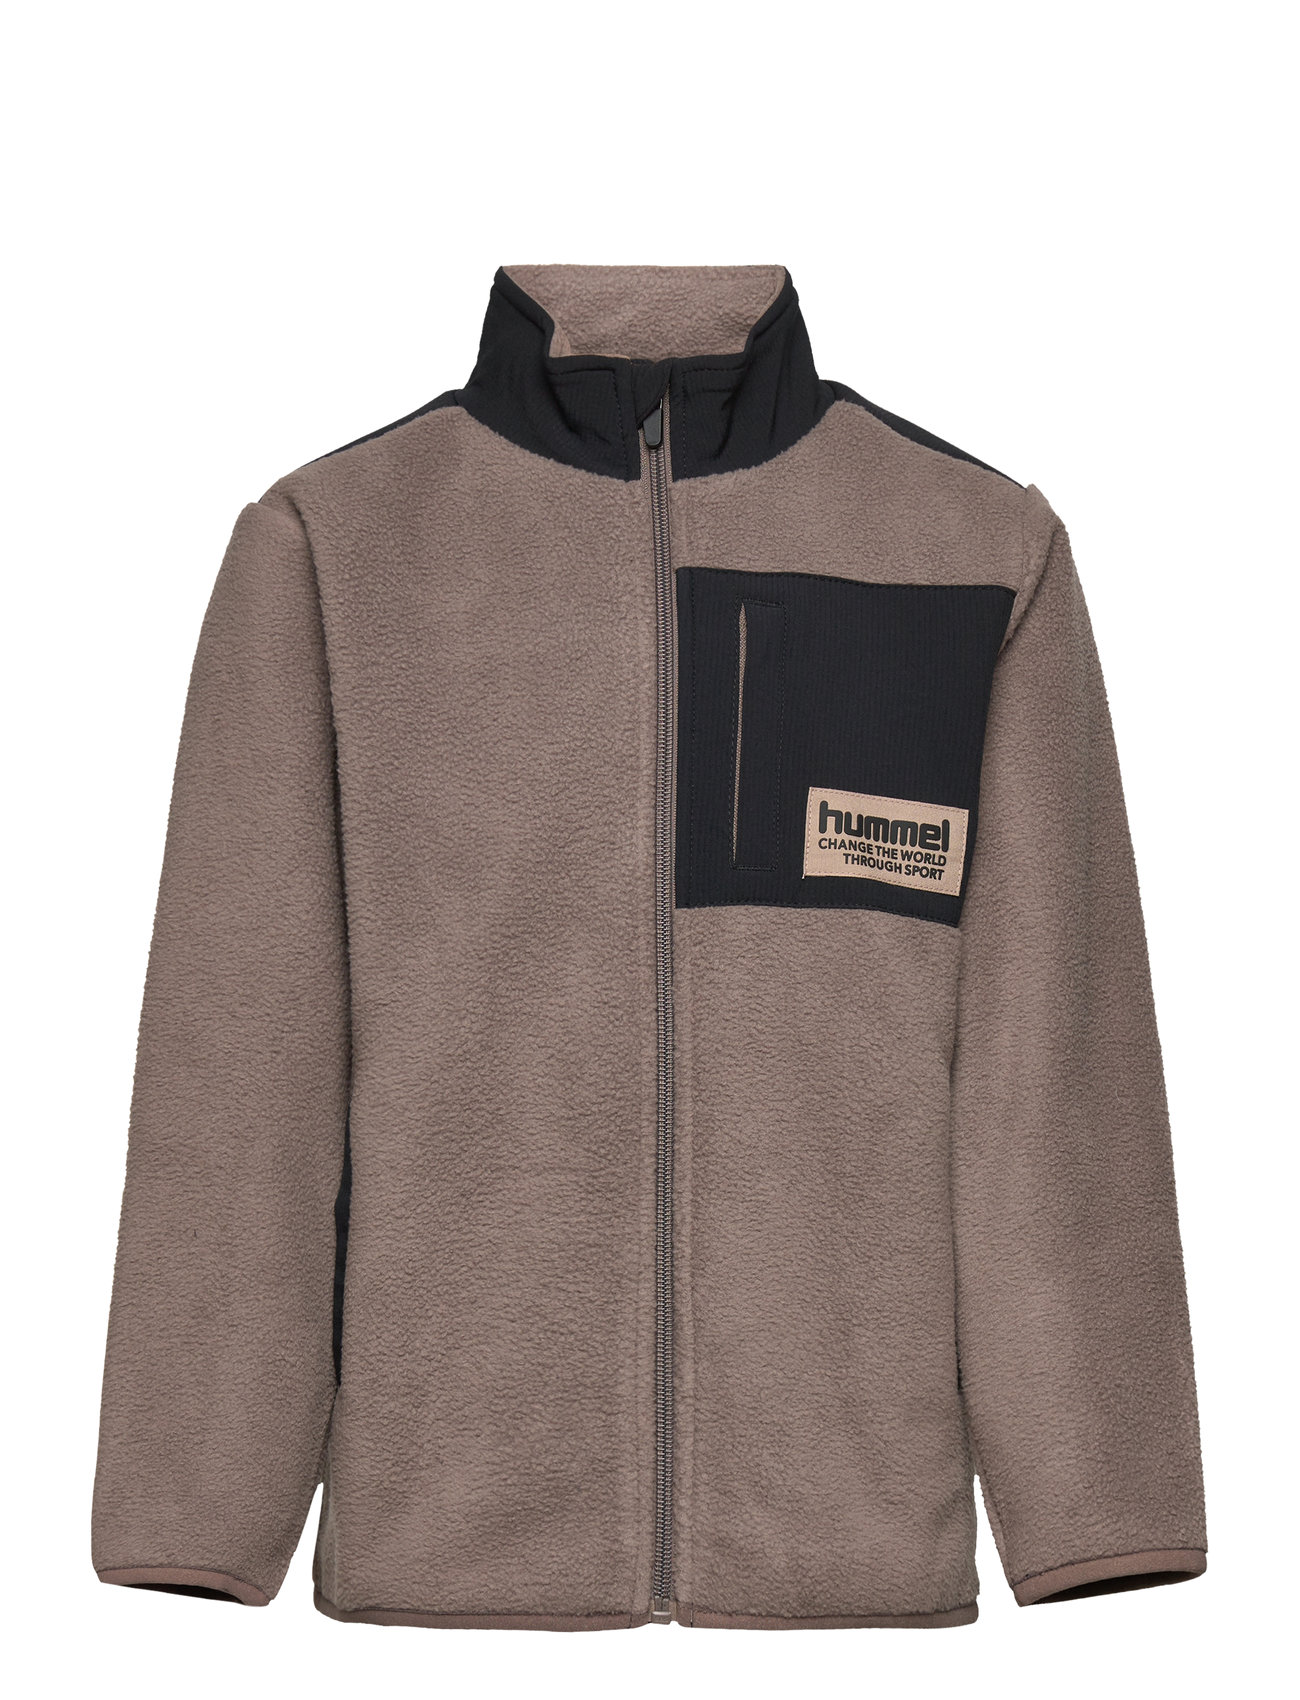 Hummel Hmldare Fleece Jacket Switzerland - Fleece-Kleidung Boozt.com 